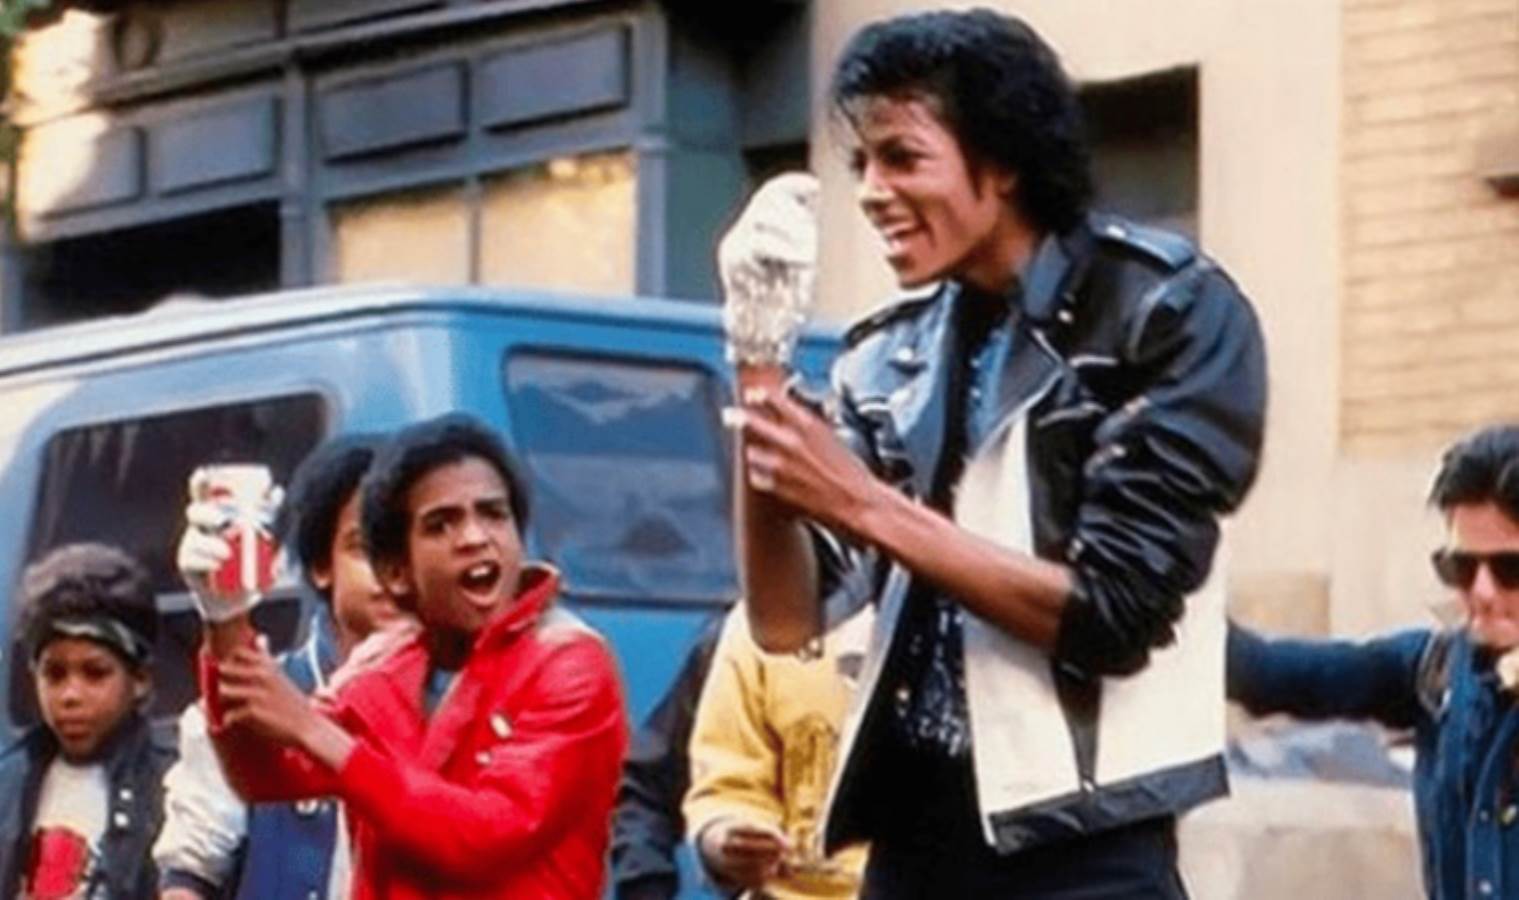 Michael Jackson'ın nadir kayıtları açık artırmadan çekildi: Mirasçılar hukuki mücadele başlatacak